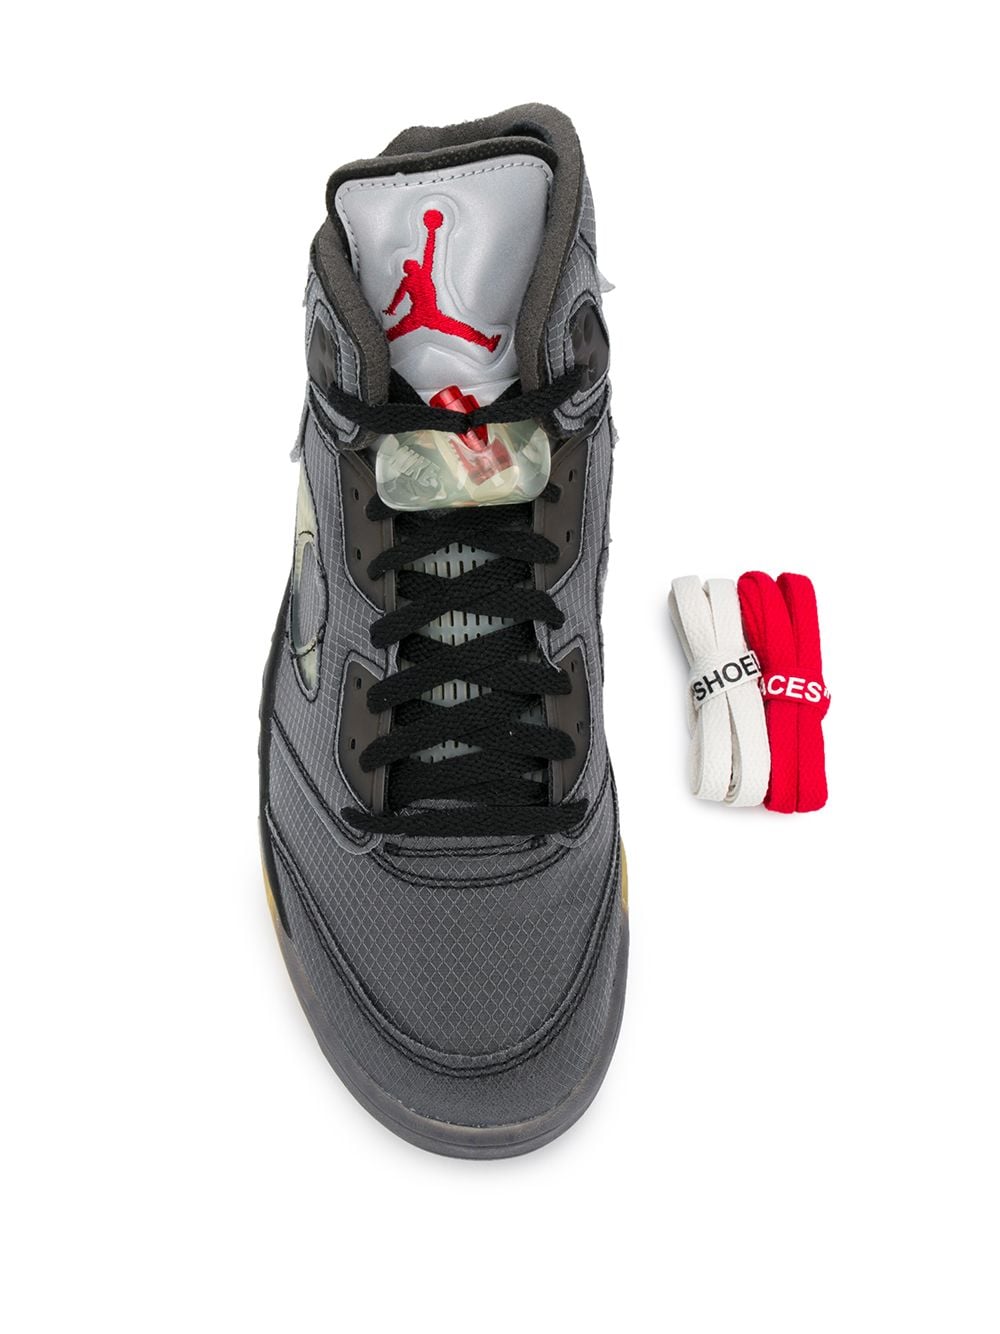 Jordan Air Jordan 5 Retro SP "Muslin" sneakers